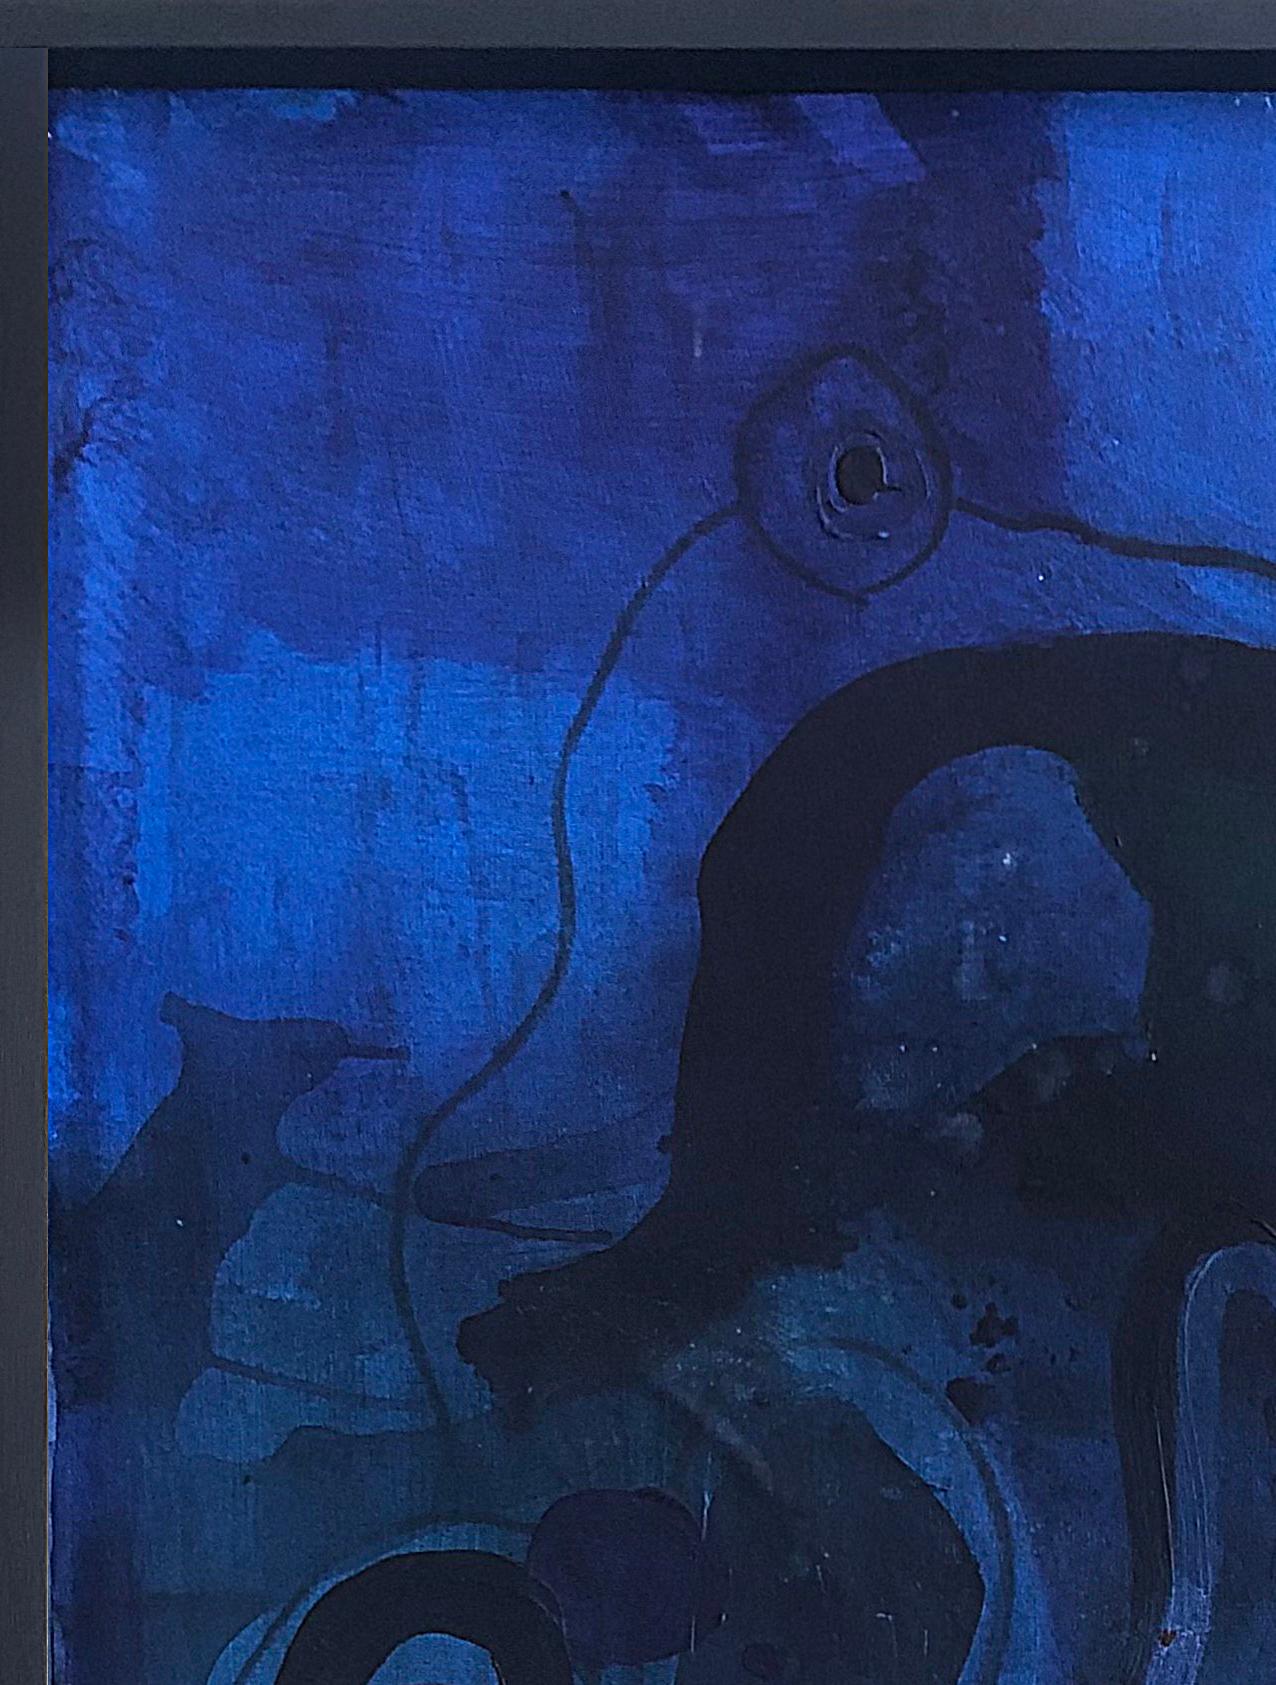 AZULES 2, 2021 von Alec Franco
Gemischter Umschlag auf rustikaler Leinwand
Gemischte Technik (Acryl und Ölpastell) auf Leinwand
Bildgröße: 117 cm H x 86 cm B
Gerahmt
Unterzeichnet von der  Künstler
_______
Die Werke des Künstlers basieren auf der